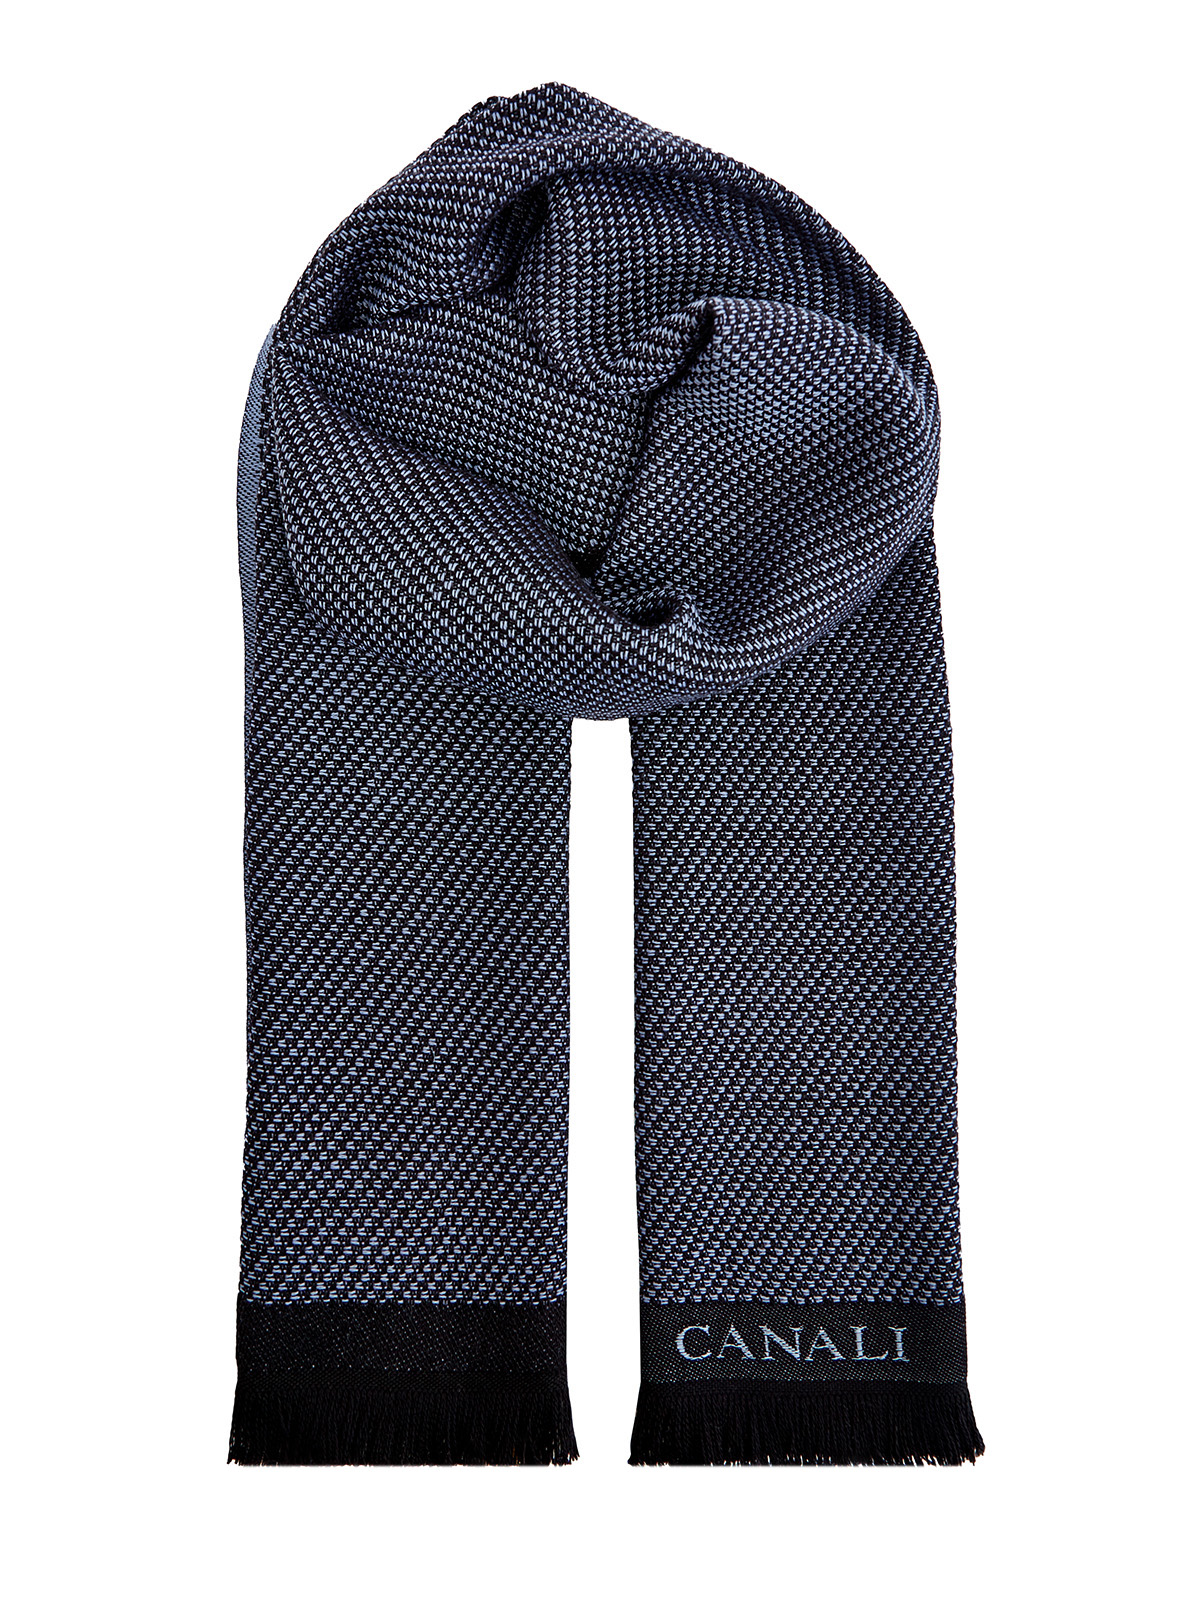 Шерстяной шарф с логотипом ручной работы CANALI, цвет синий, размер 41.5;44;45